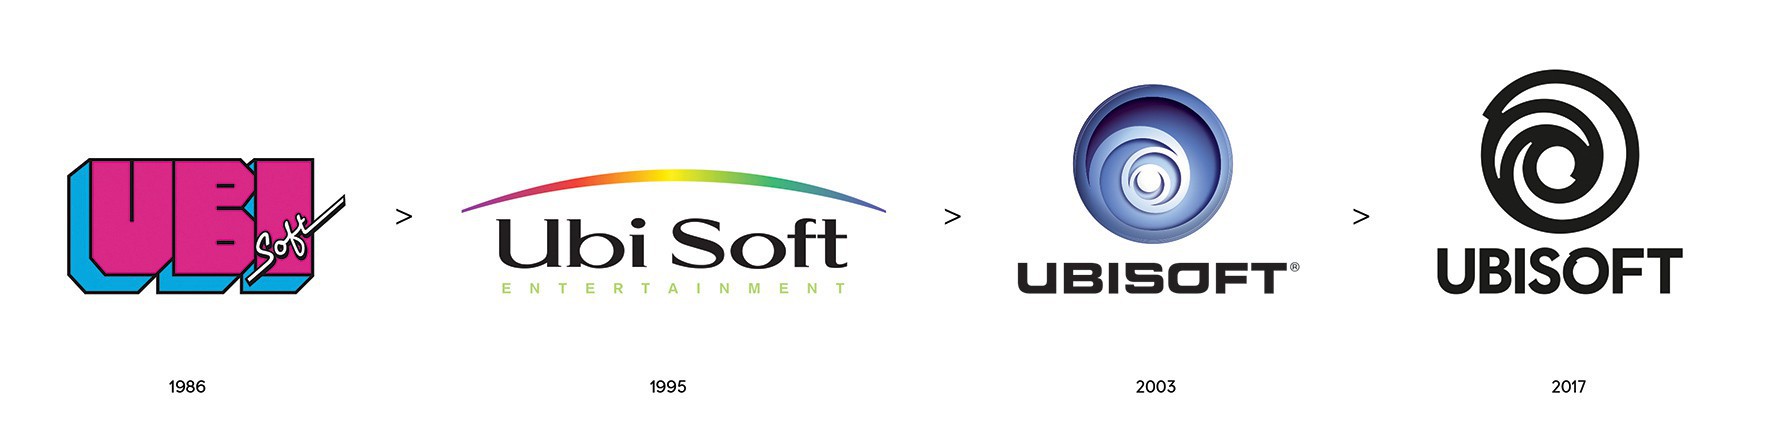 Historique des logos Ubisoft